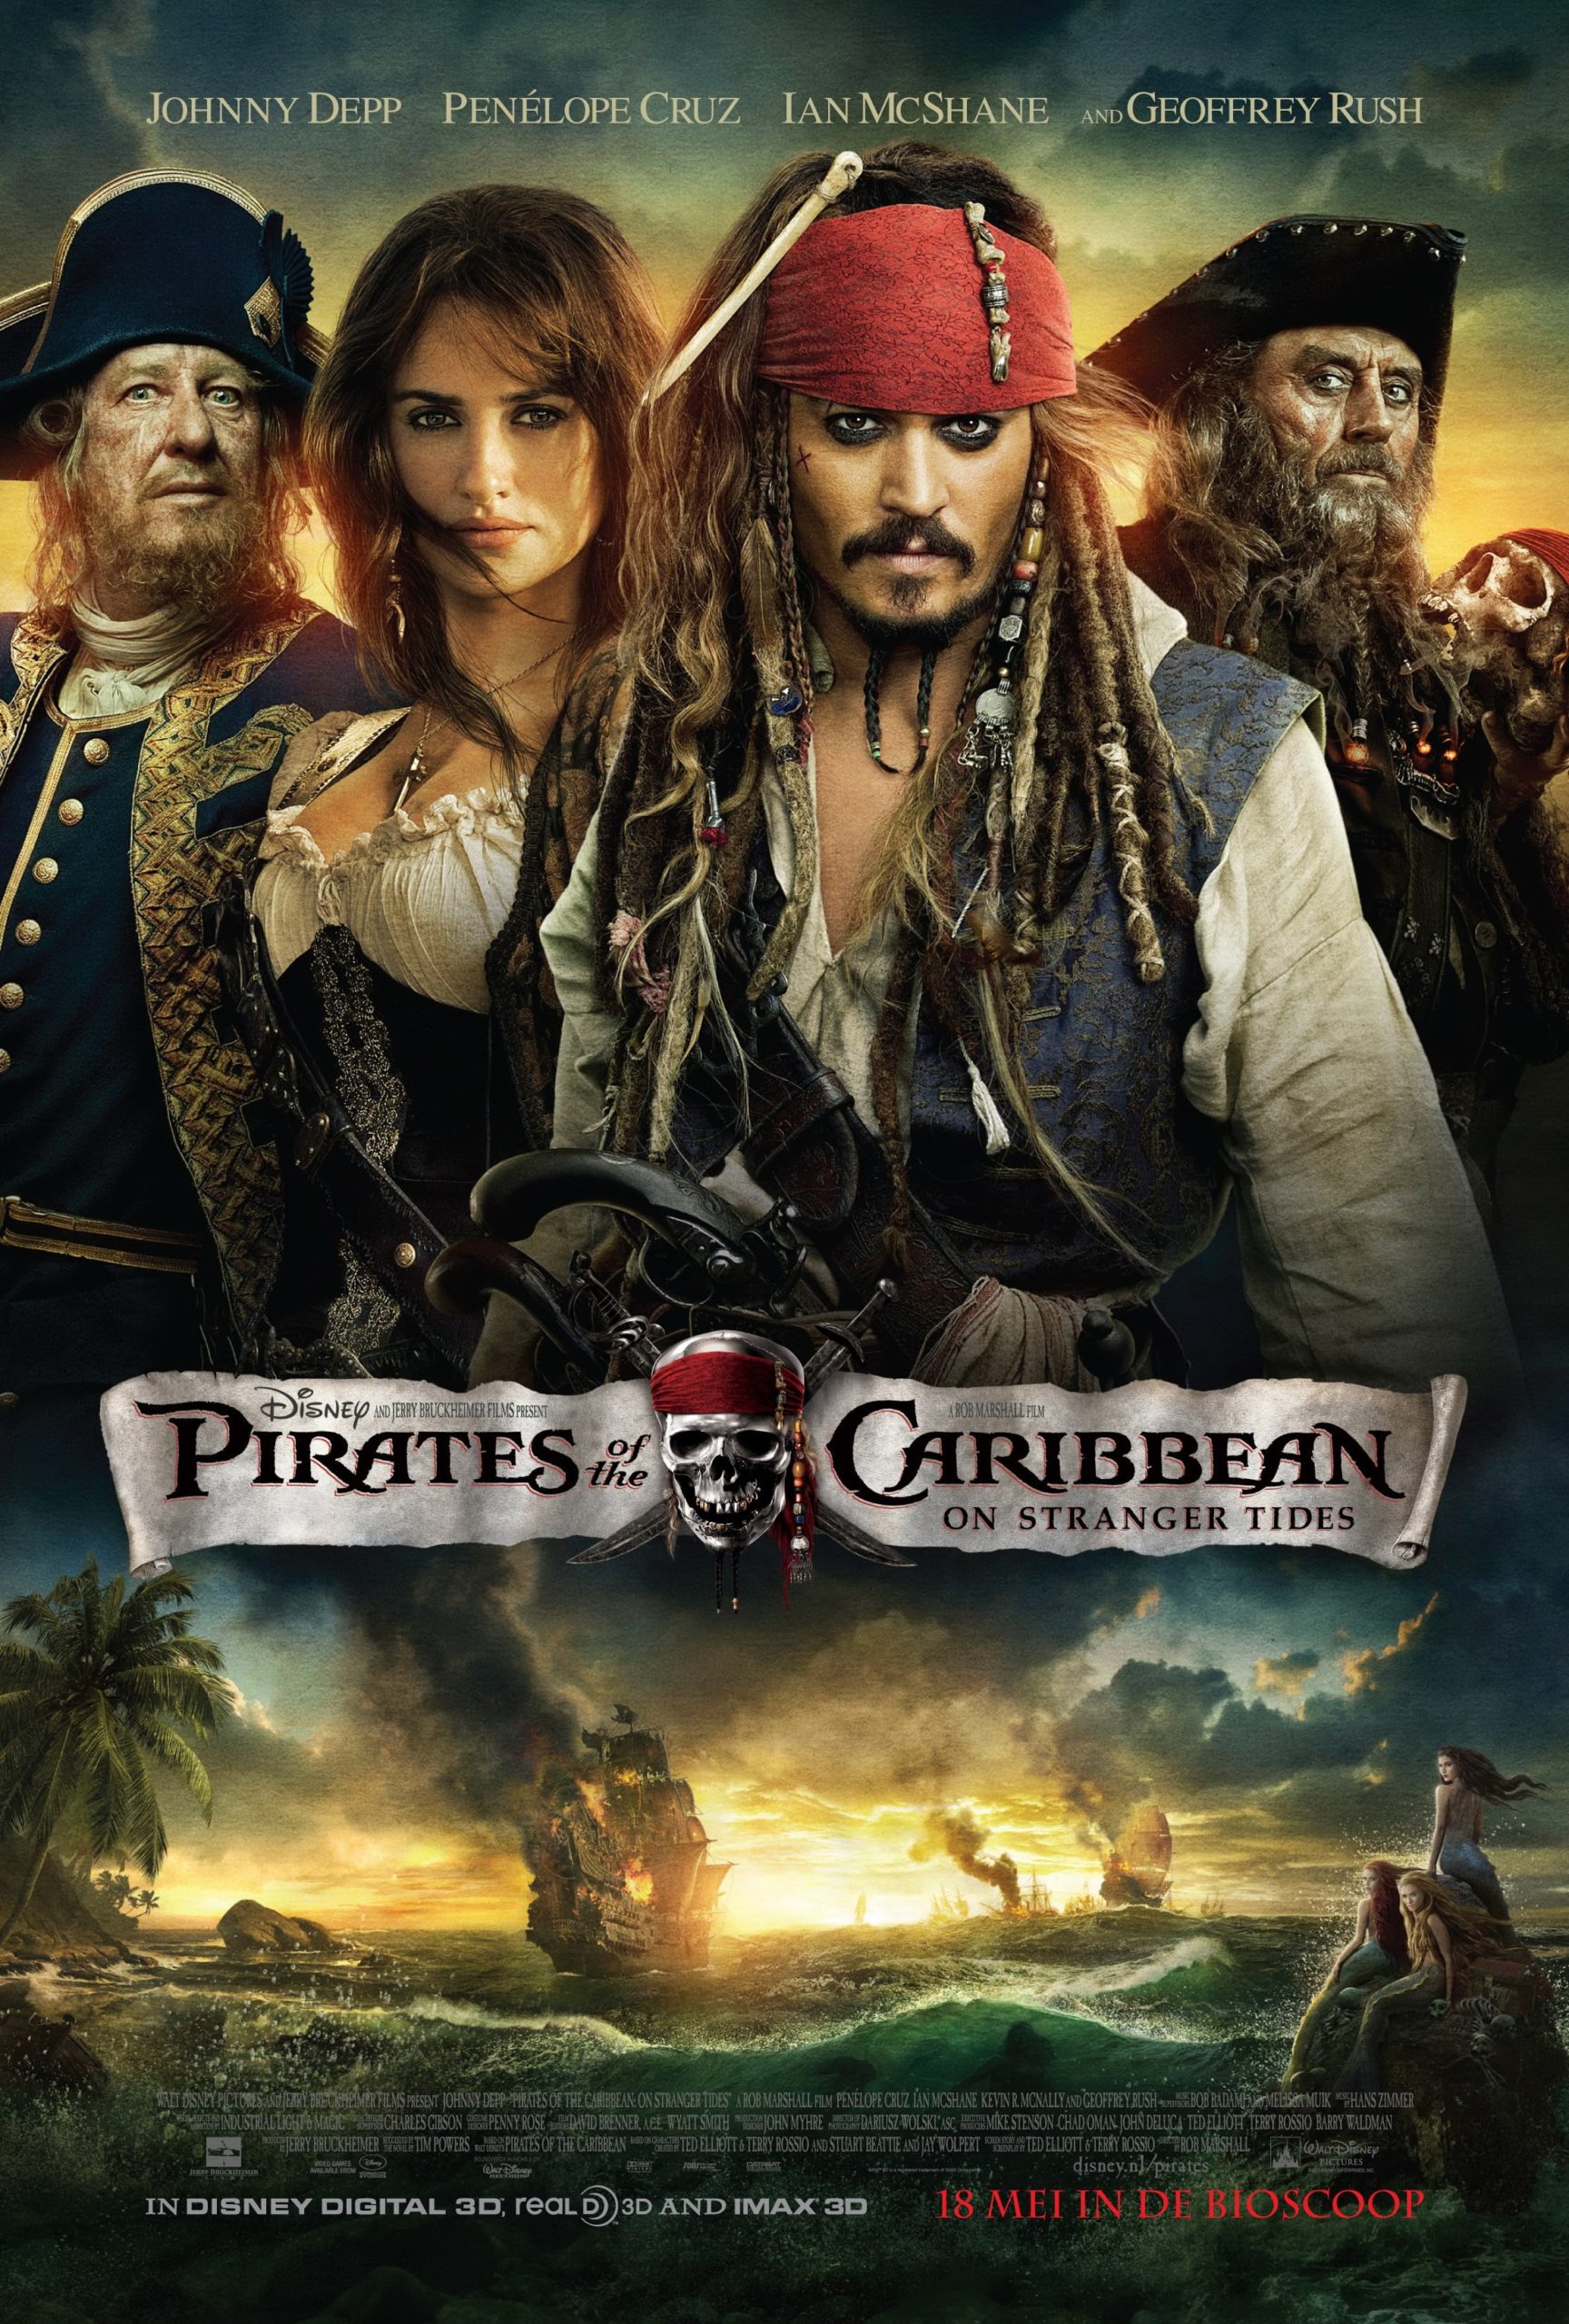 ดูหนังออนไลน์ฟรี Pirates of the Caribbean 4: On Stranger Tides 2011 ผจญภัยล่าสายน้ำอมฤตสุด 037moviefree